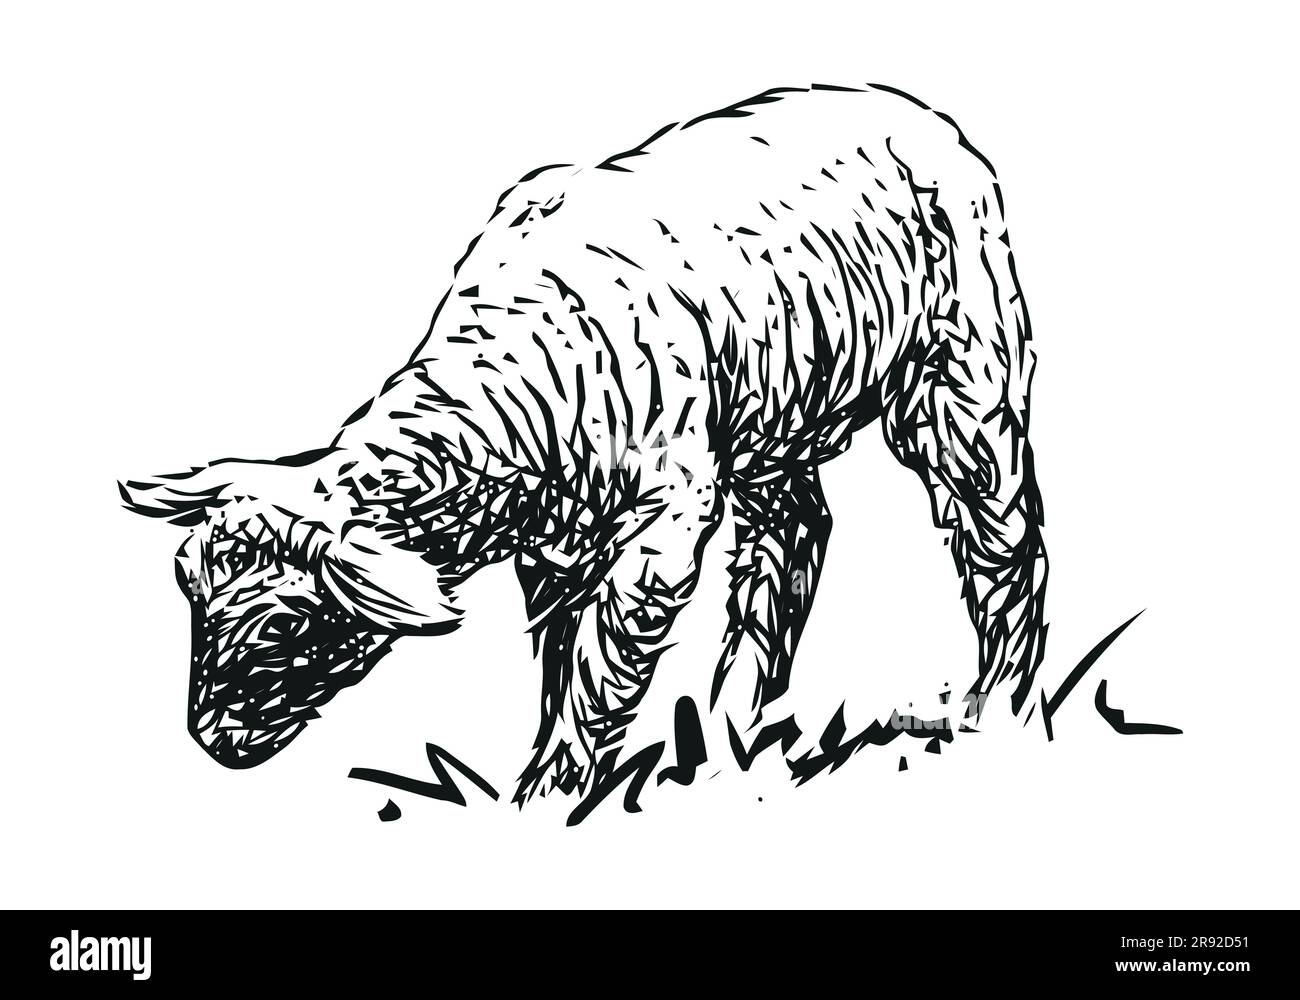 agneau - animal de ferme, illustration vectorielle noire et blanche dessinée à la main, isolée sur fond blanc Illustration de Vecteur